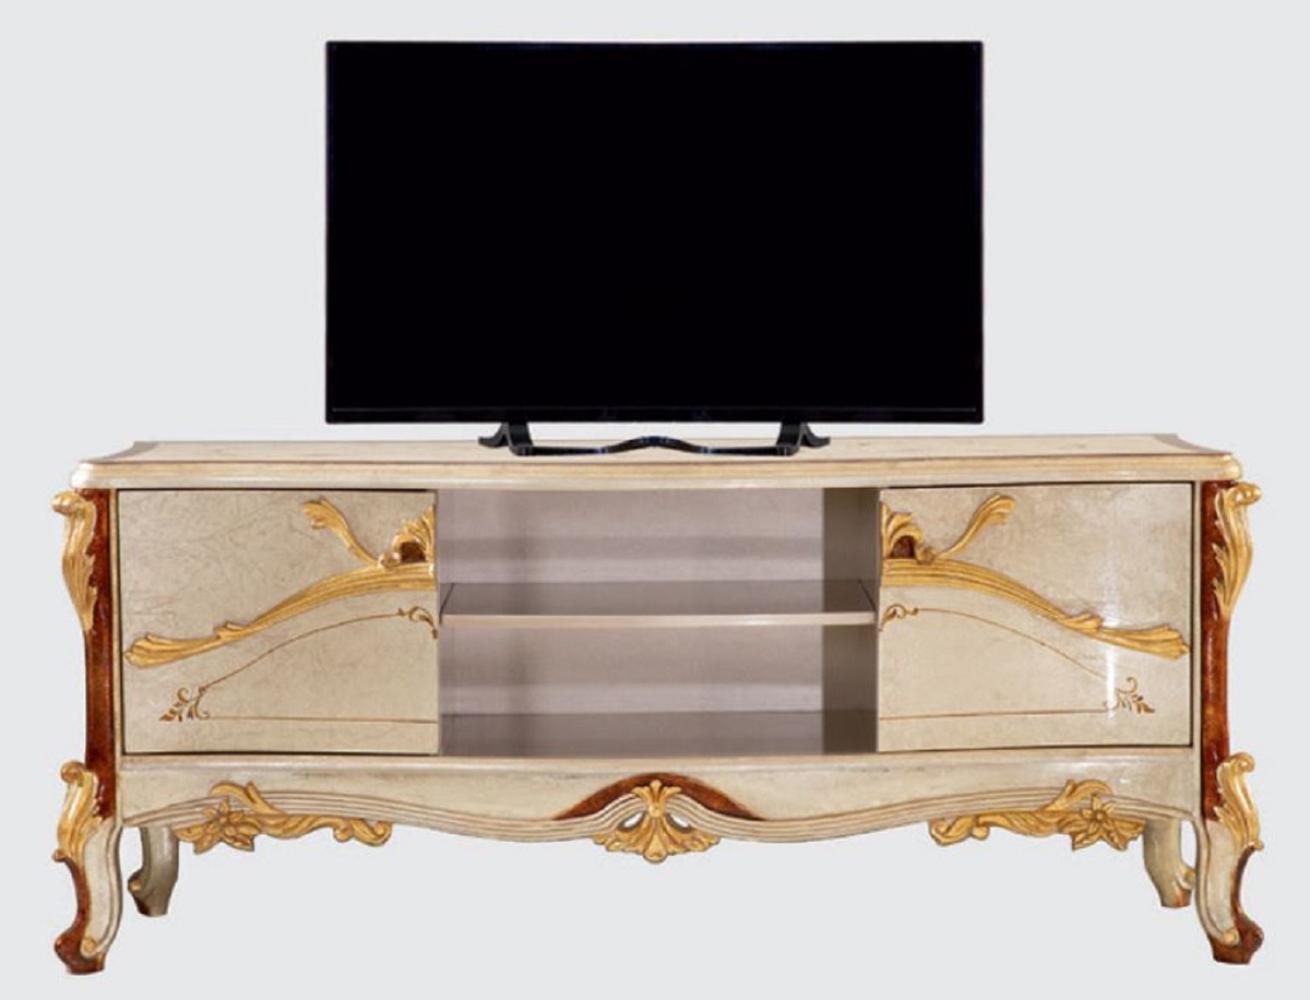 Casa Padrino Luxus Barock TV Schrank Silber / Braun / Gold - Prunkvolles Wohnzimmer Sideboard mit 2 Türen - Barock Wohnzimmer Möbel Bild 1